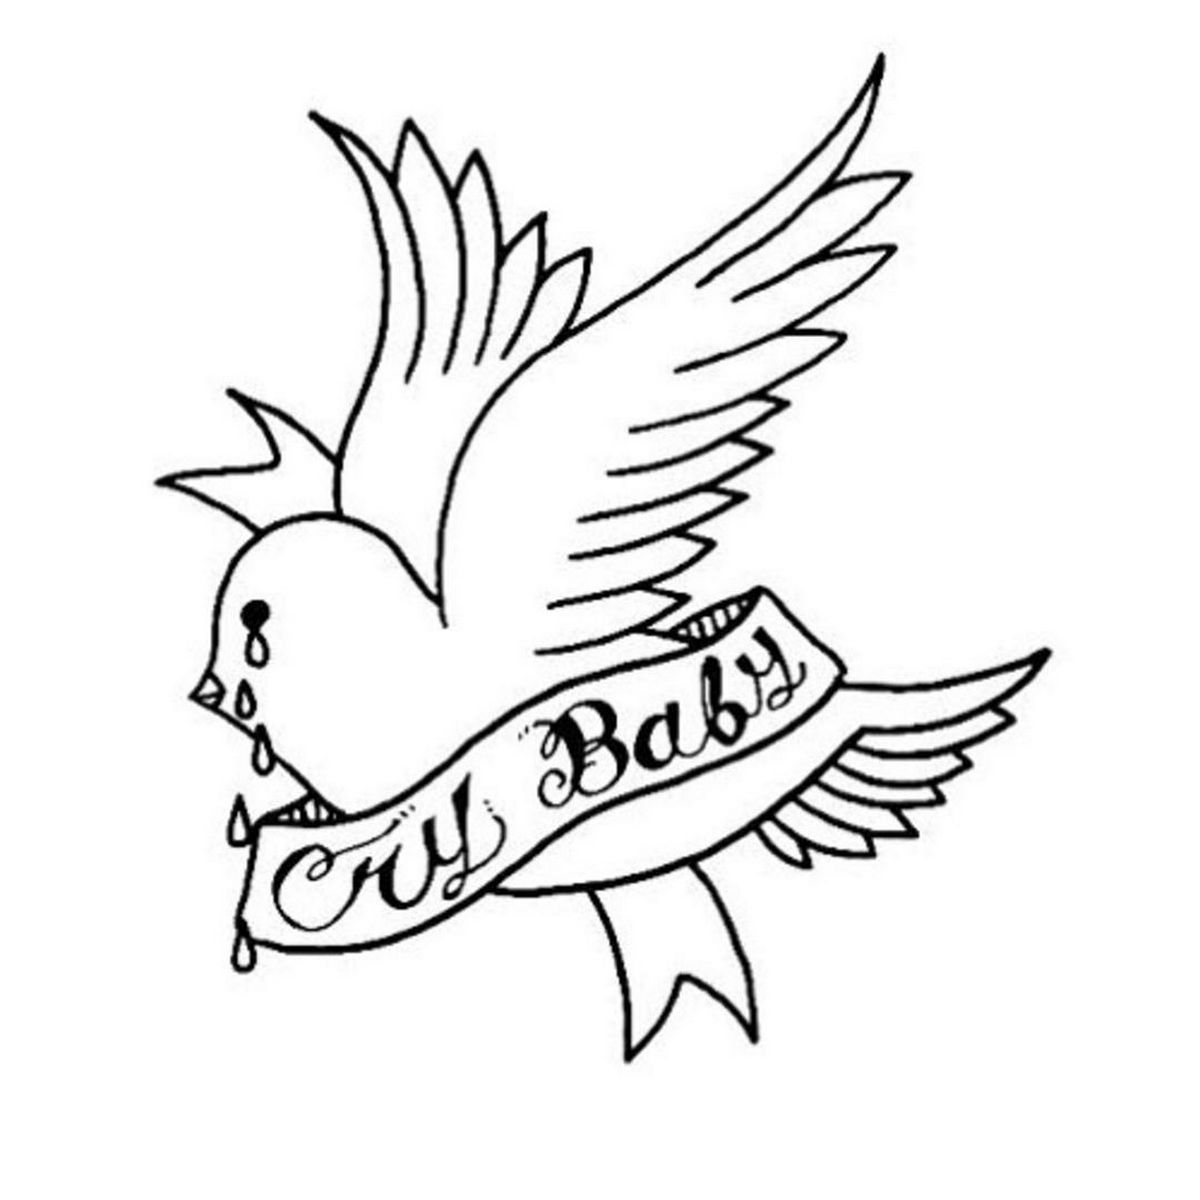 Cool Image Design - Tatuaje de Lil Peep Crybaby